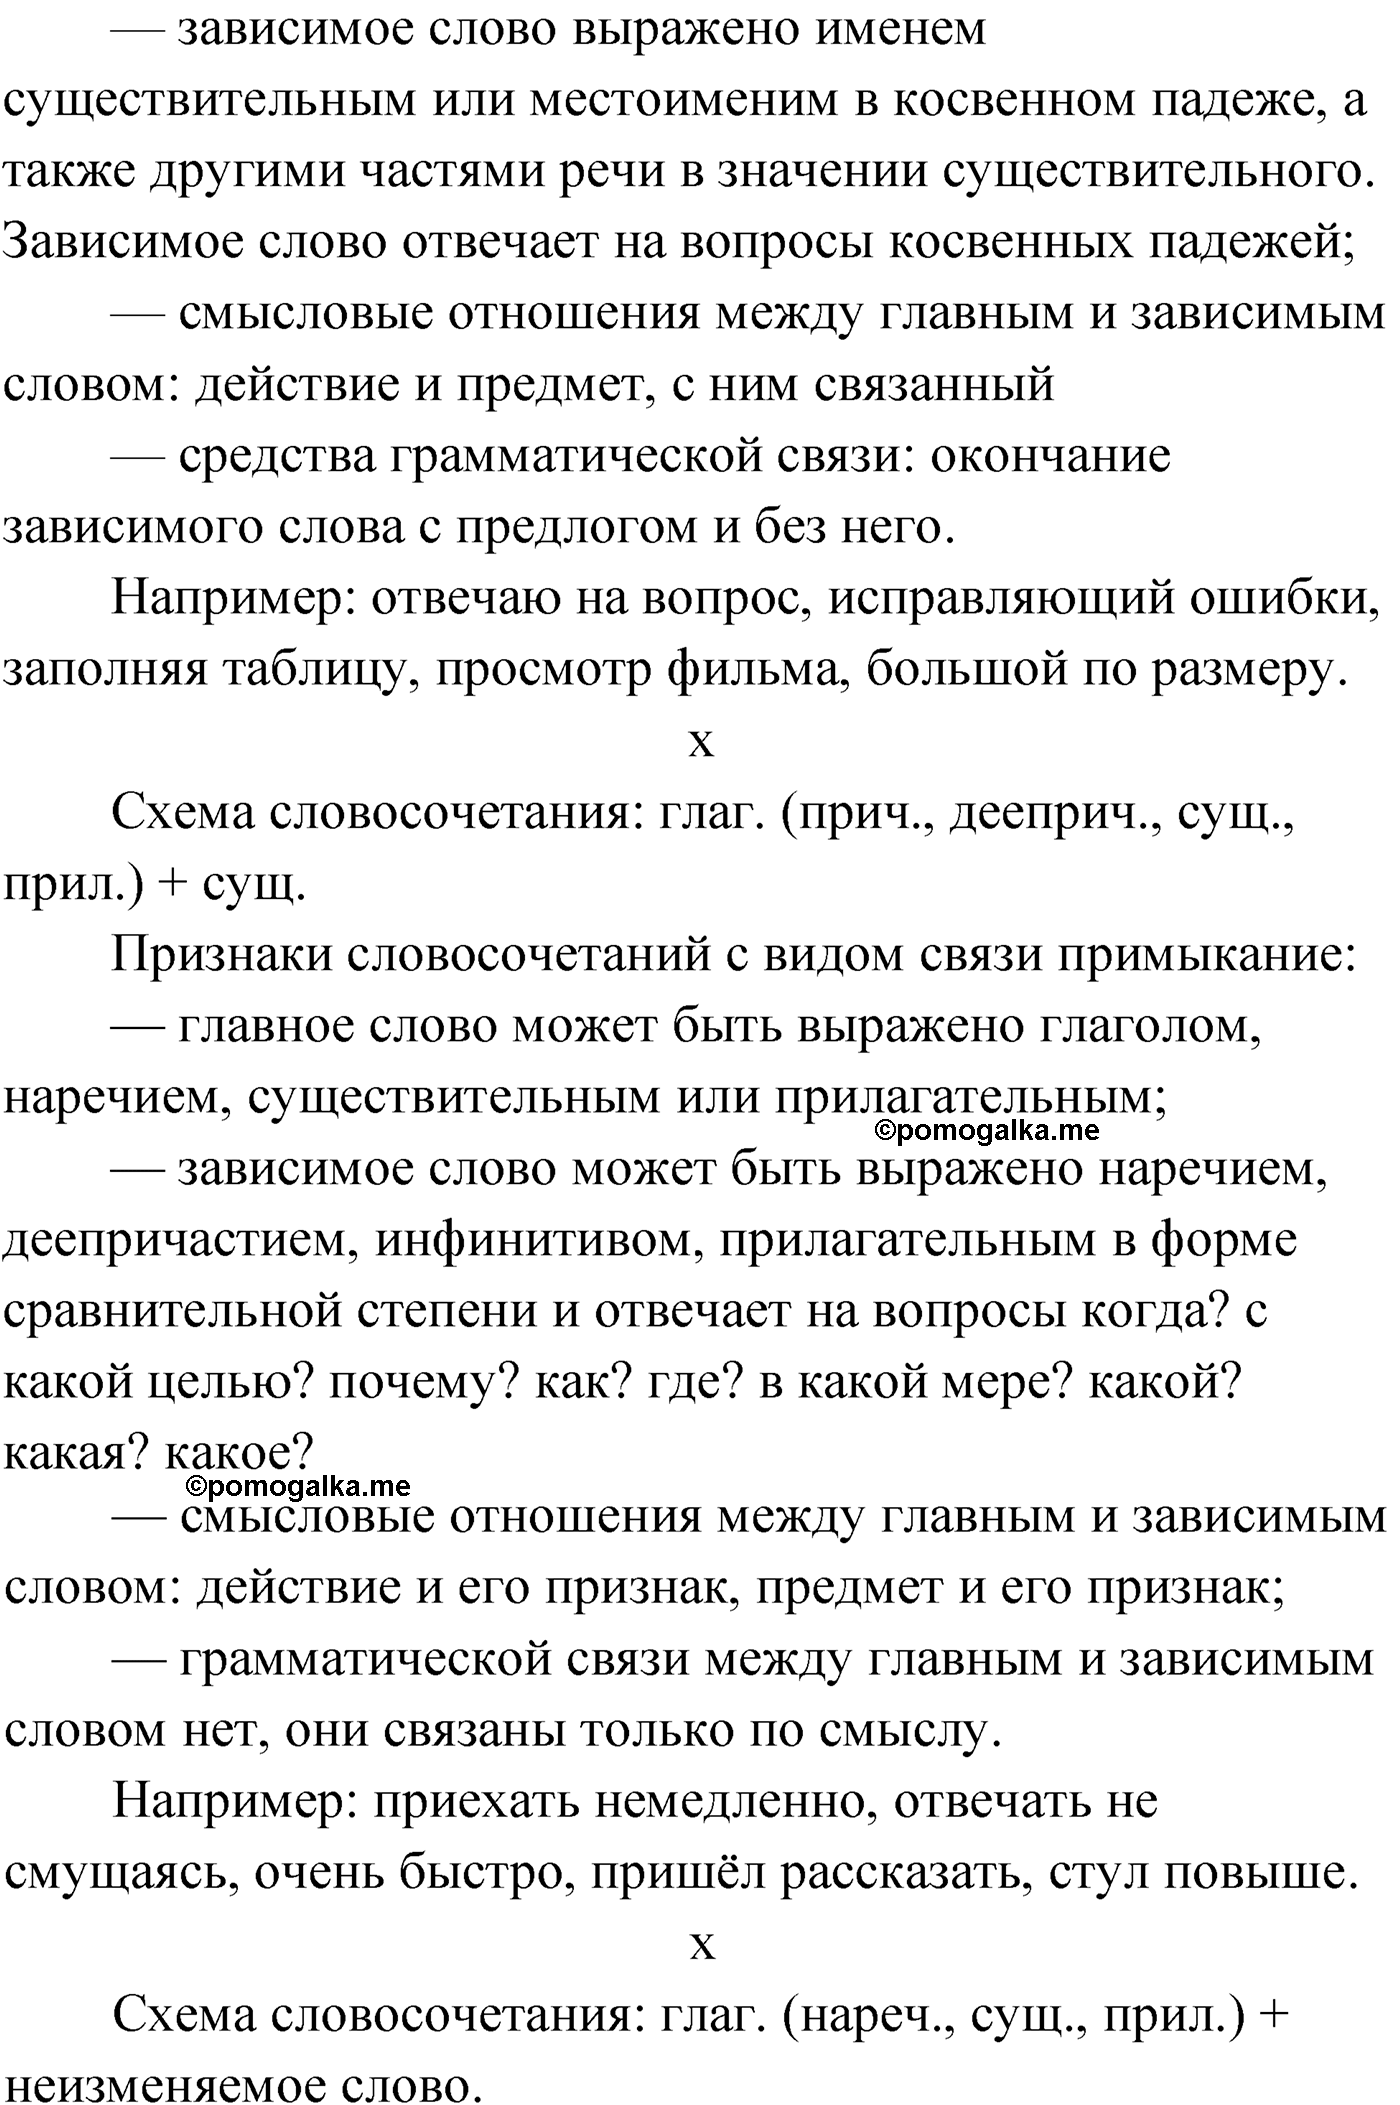 упражнение №2 русский язык 9 класс Мурина 2019 год